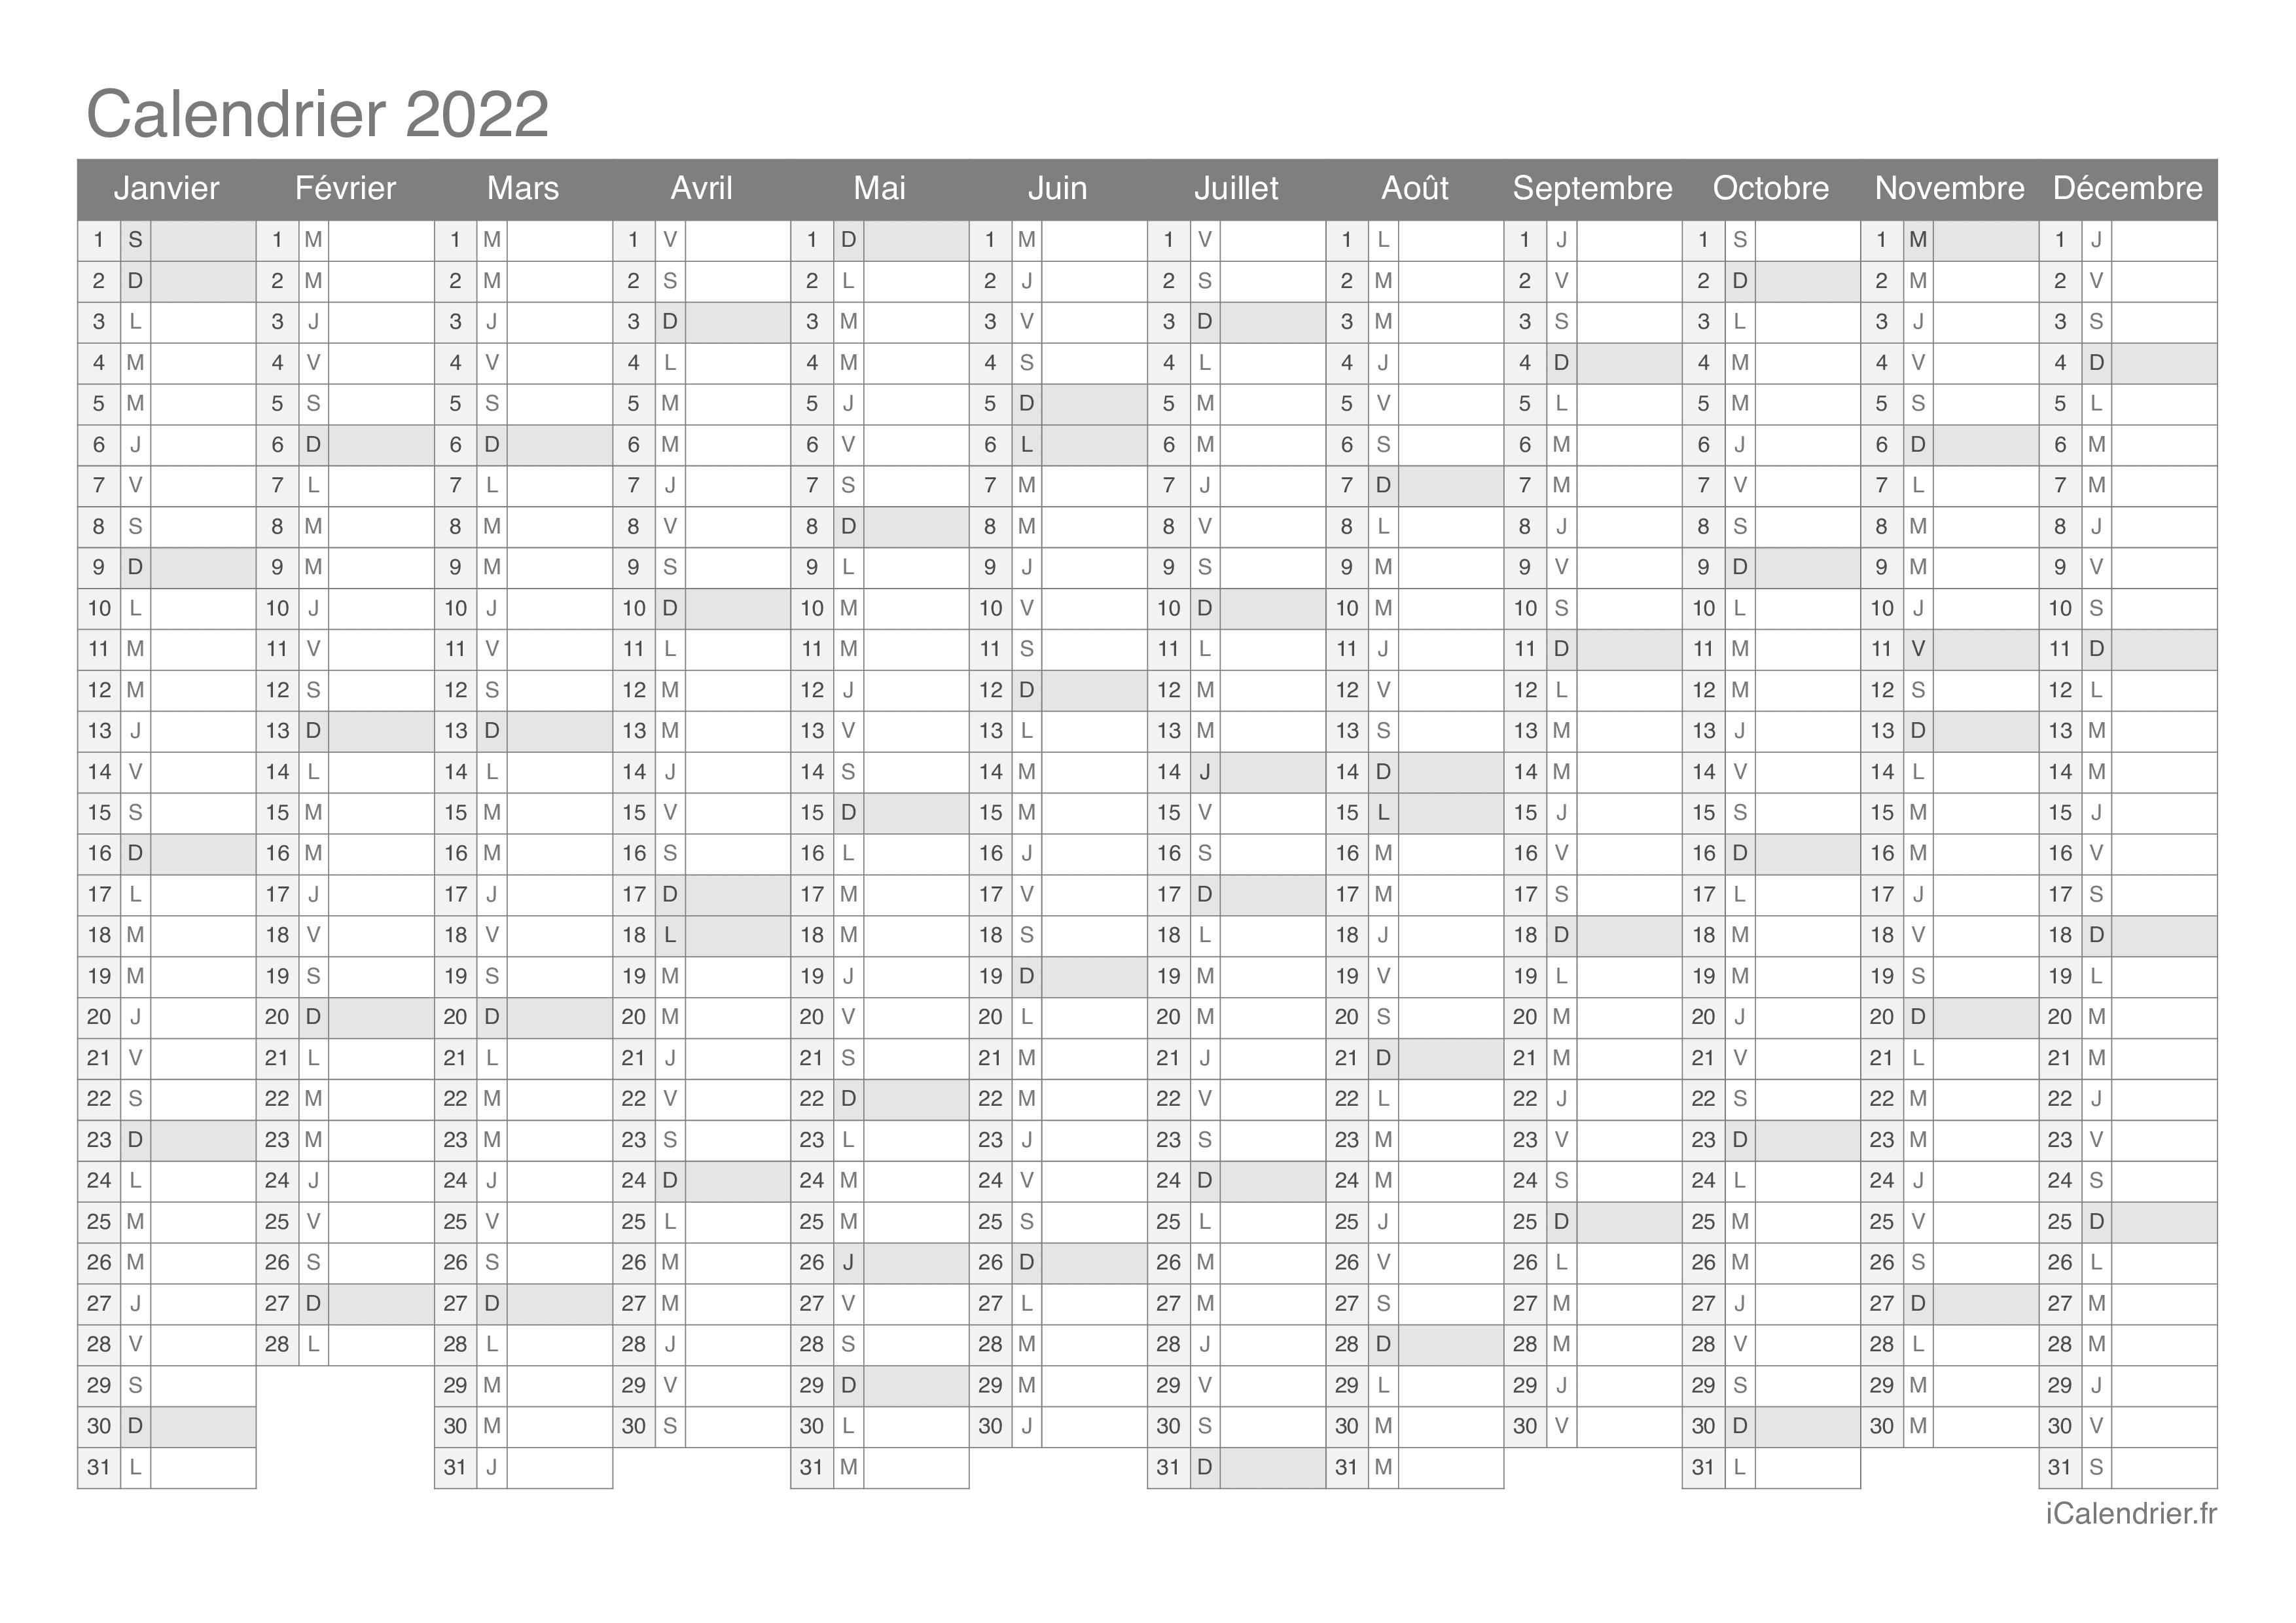 Calendrier 2022 Telecharger Calendrier 2022 à imprimer PDF et Excel   iCalendrier